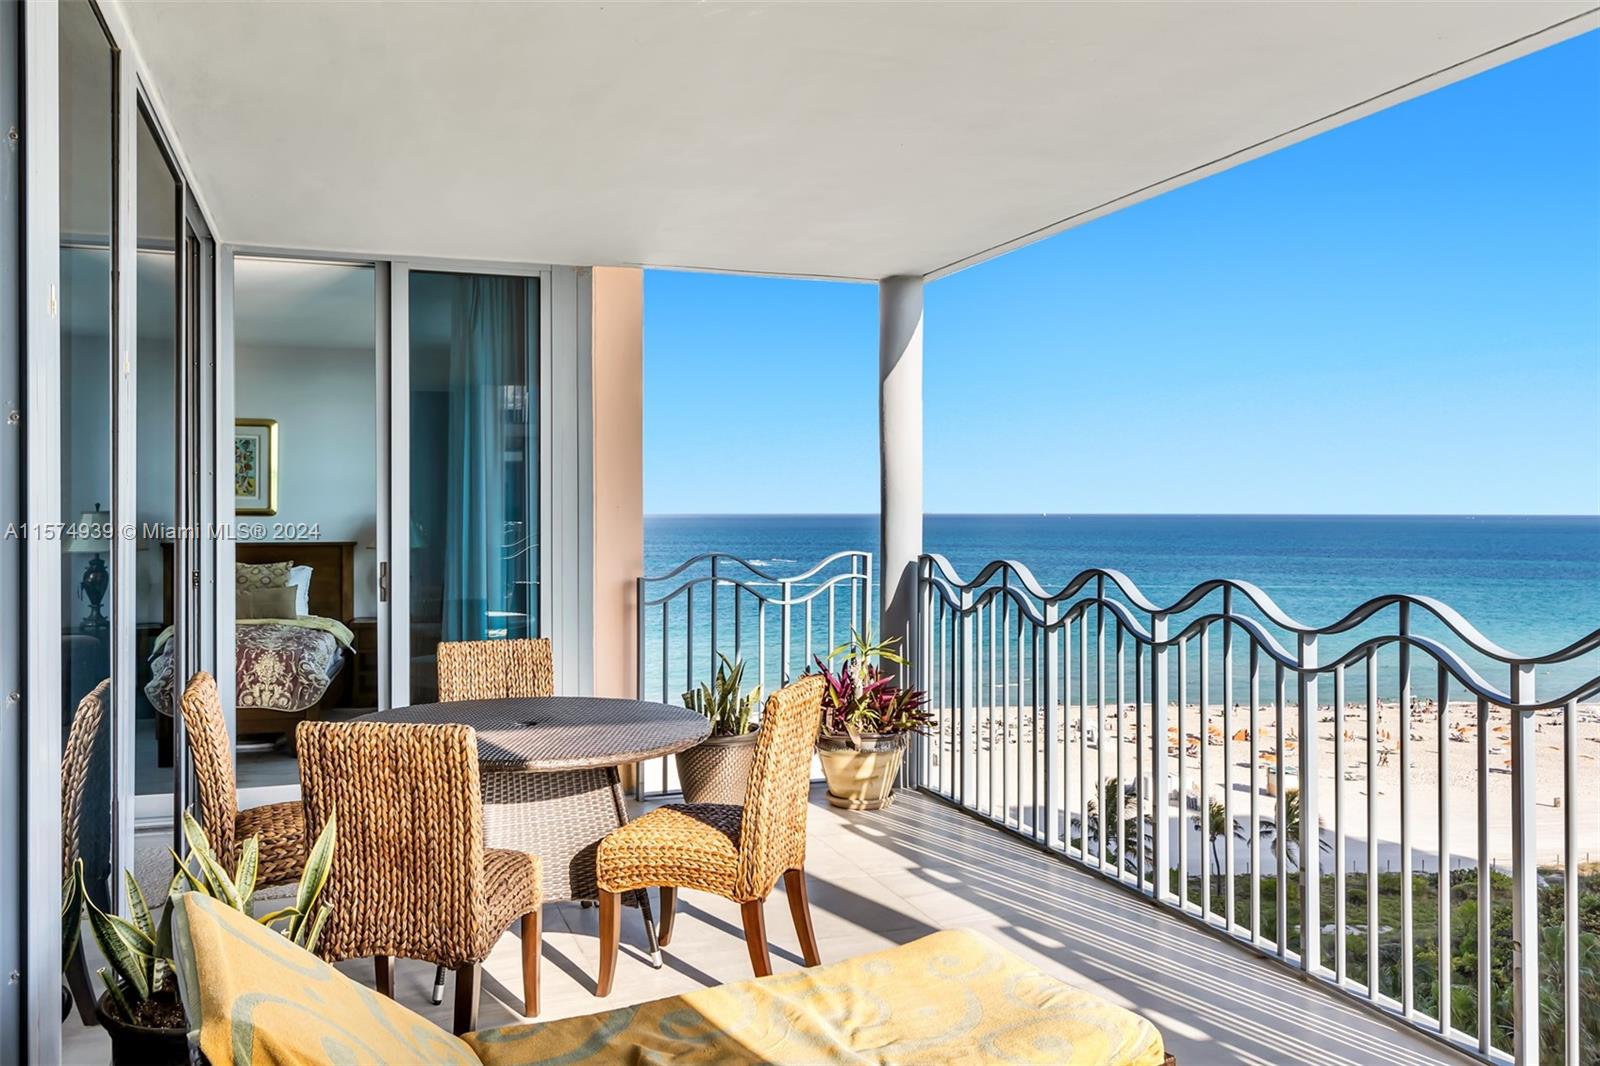 Rental Property at 1500 Ocean Dr 1104, Miami Beach, Miami-Dade County, Florida - Bedrooms: 2 
Bathrooms: 3  - $7,000 MO.